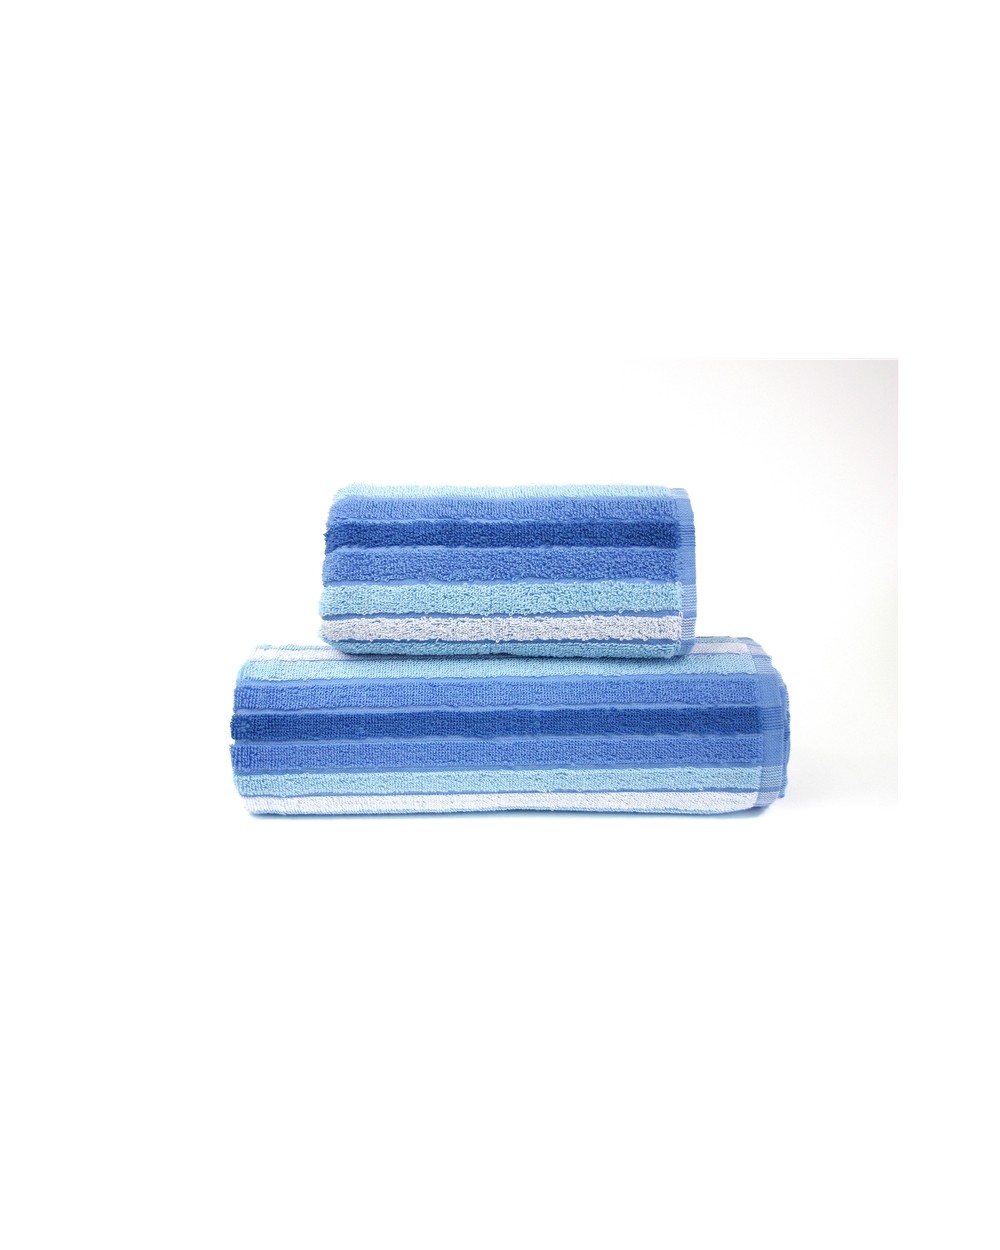 Ręcznik Eden bawełna 70x140 niebieski